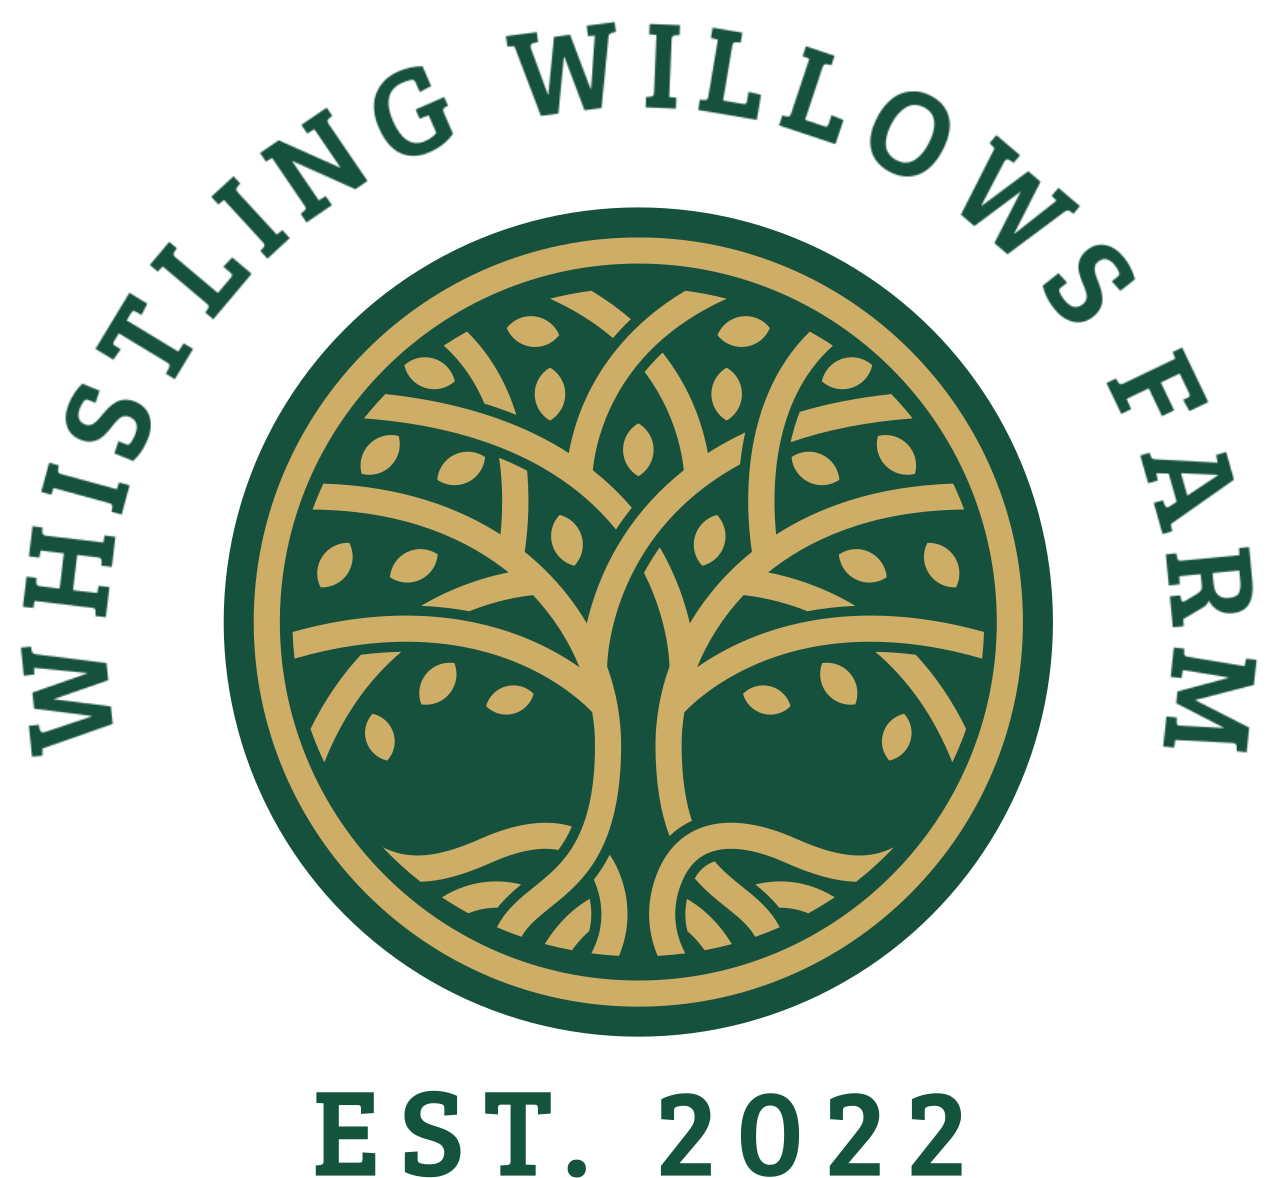 Whistling Willows Farm